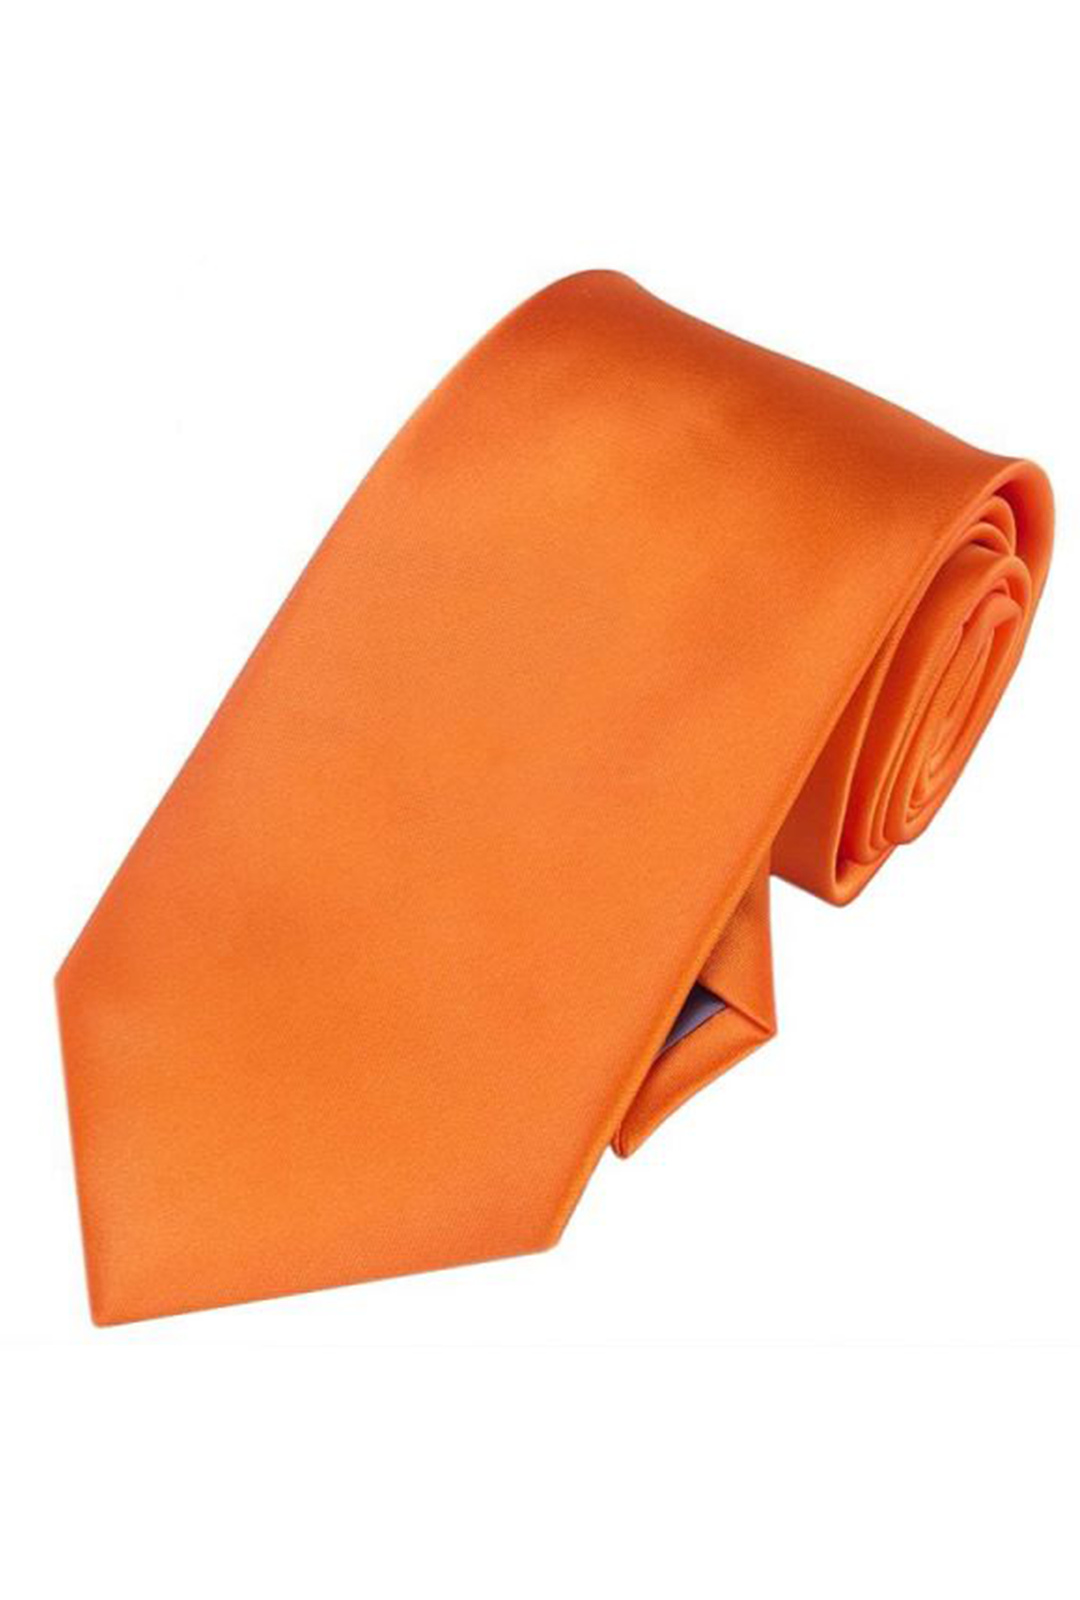 Orange Satin Skinny Neck Tie